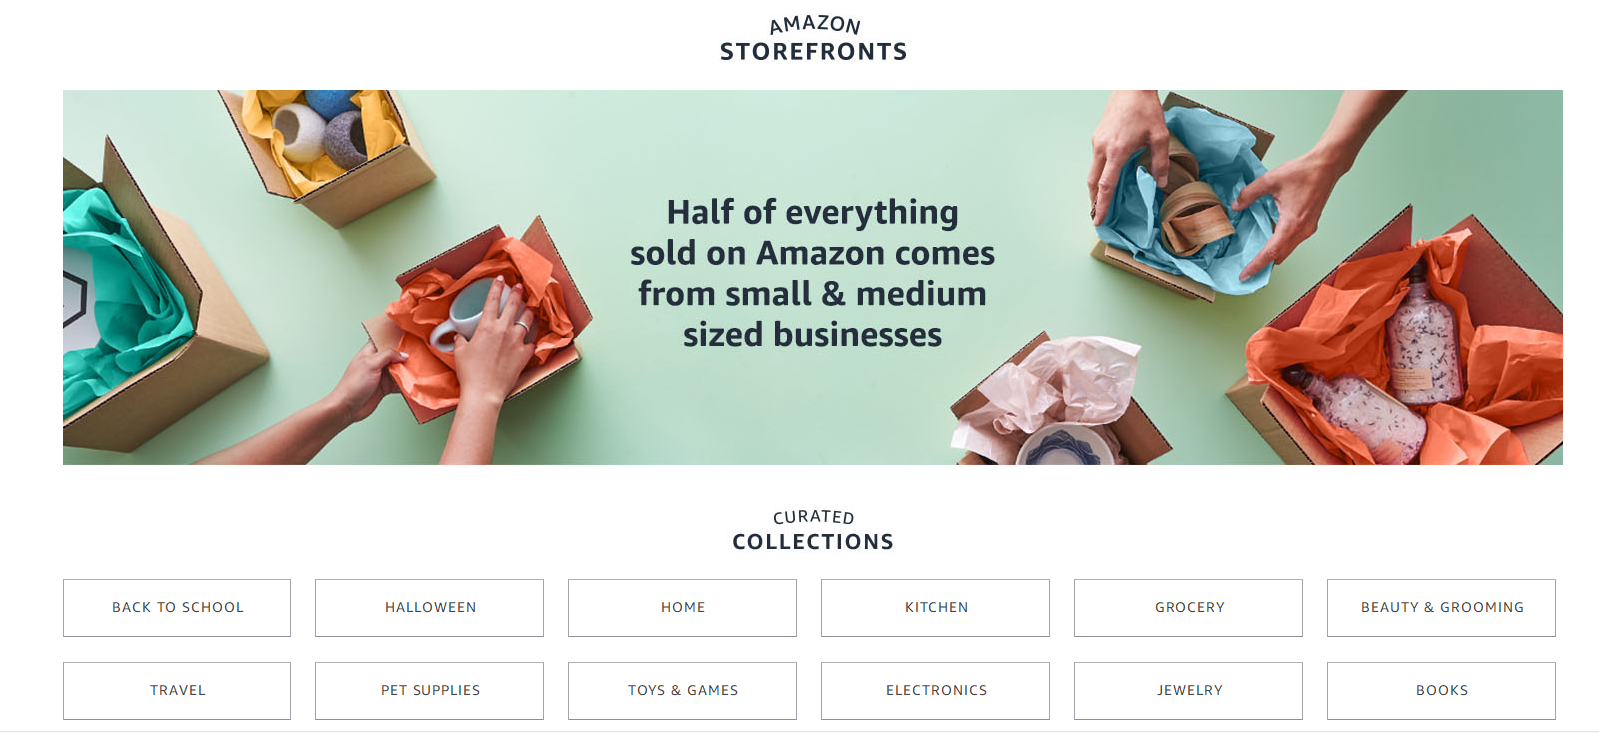 Amazon Storefronts